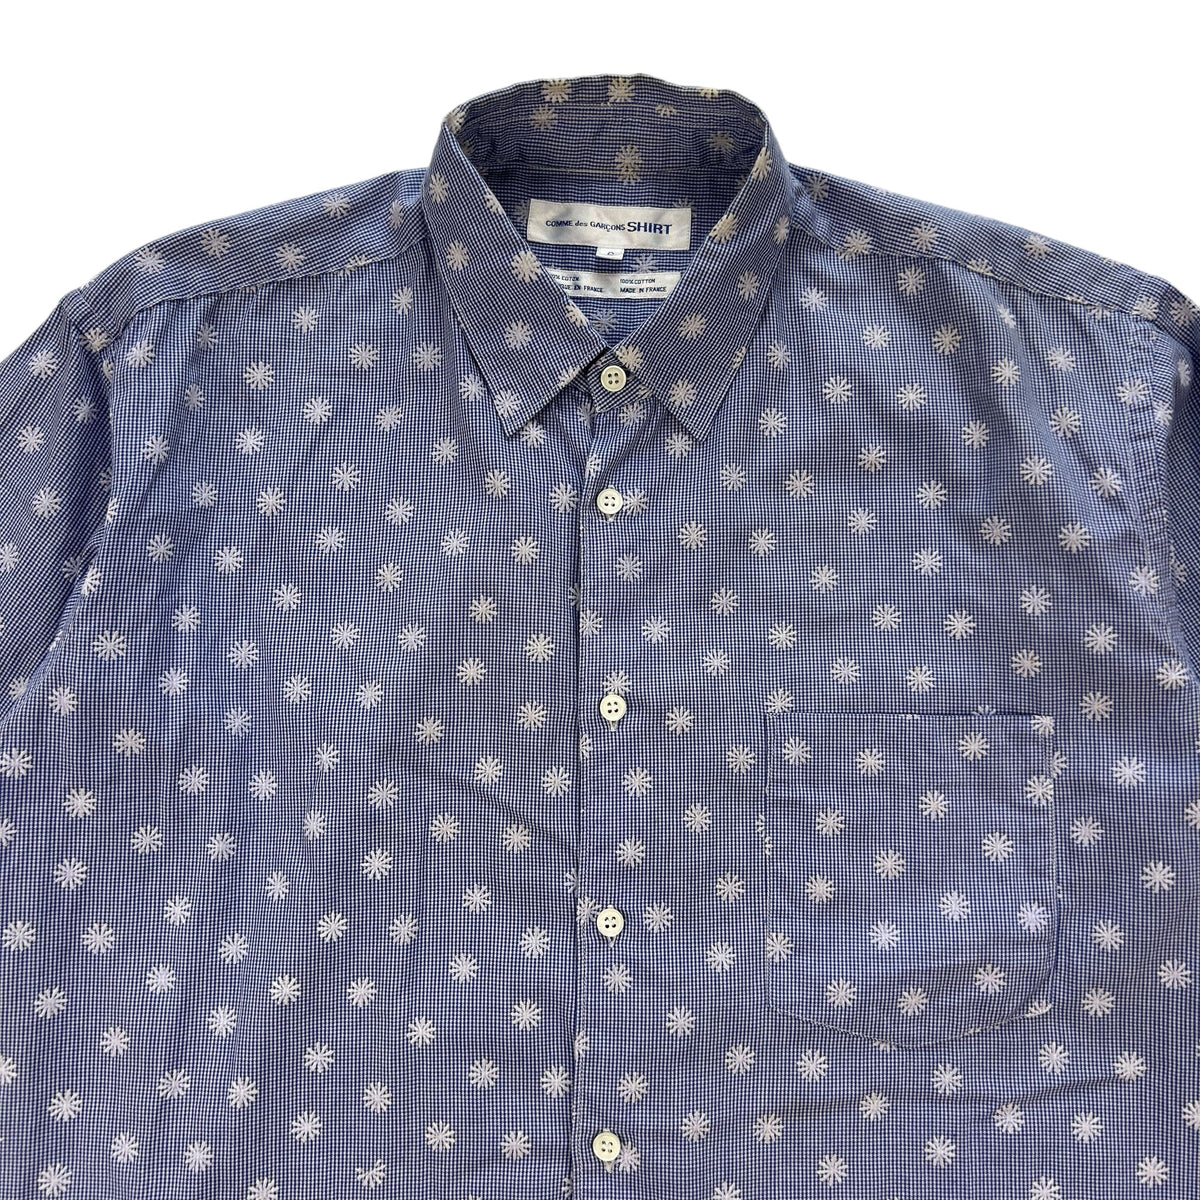 Vintage Comme Des Garcons SHIRT Short Sleeve Button Up Shirt Size L